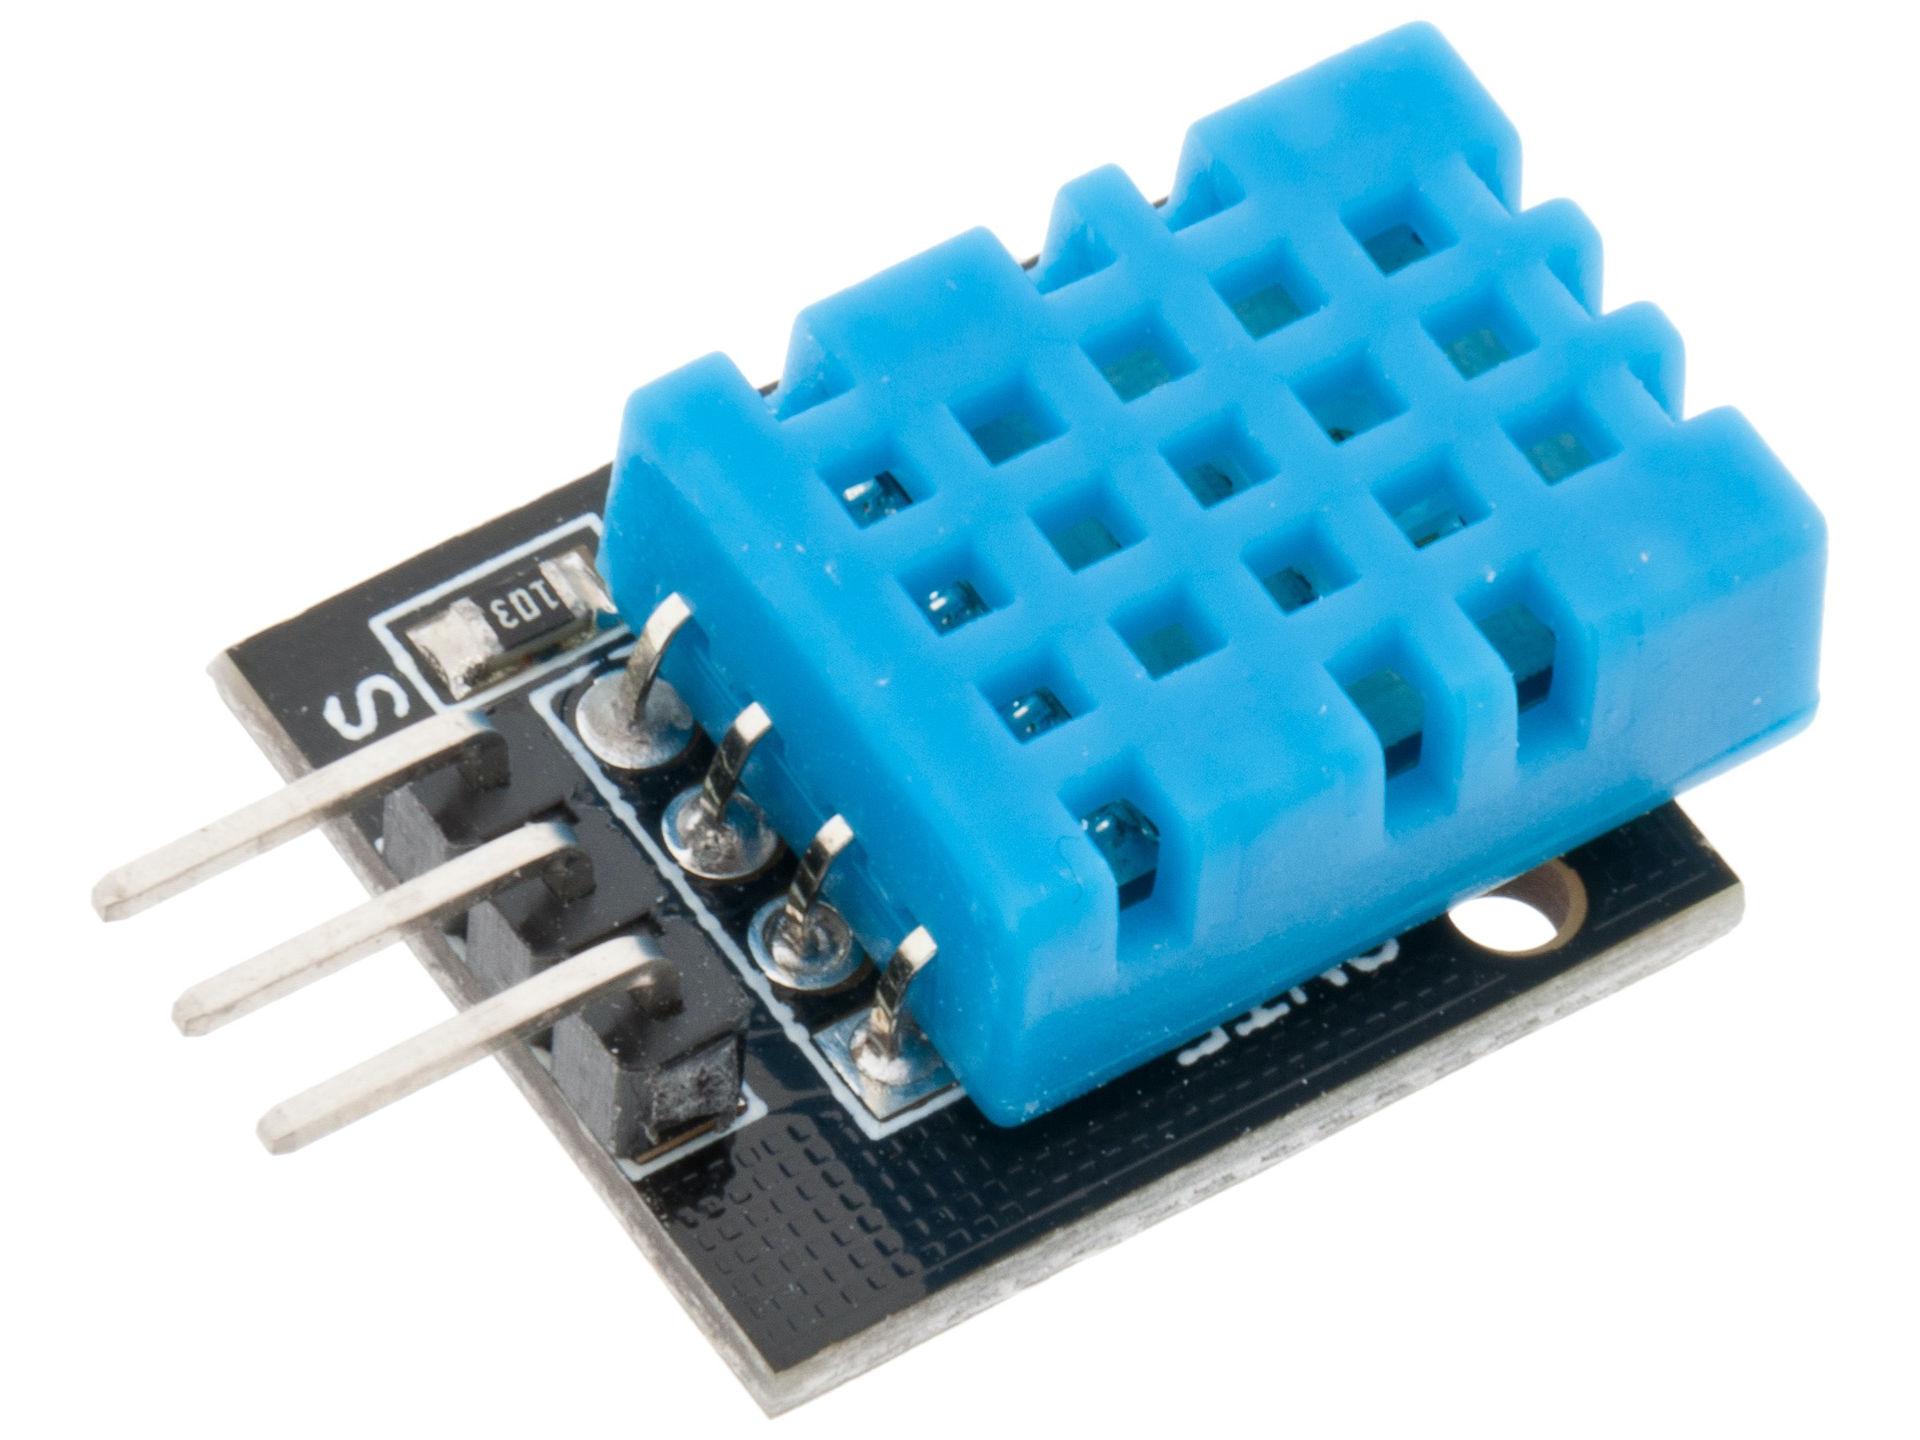 Modulo DHT11 sensor de temperatura y humedad (MQ135)